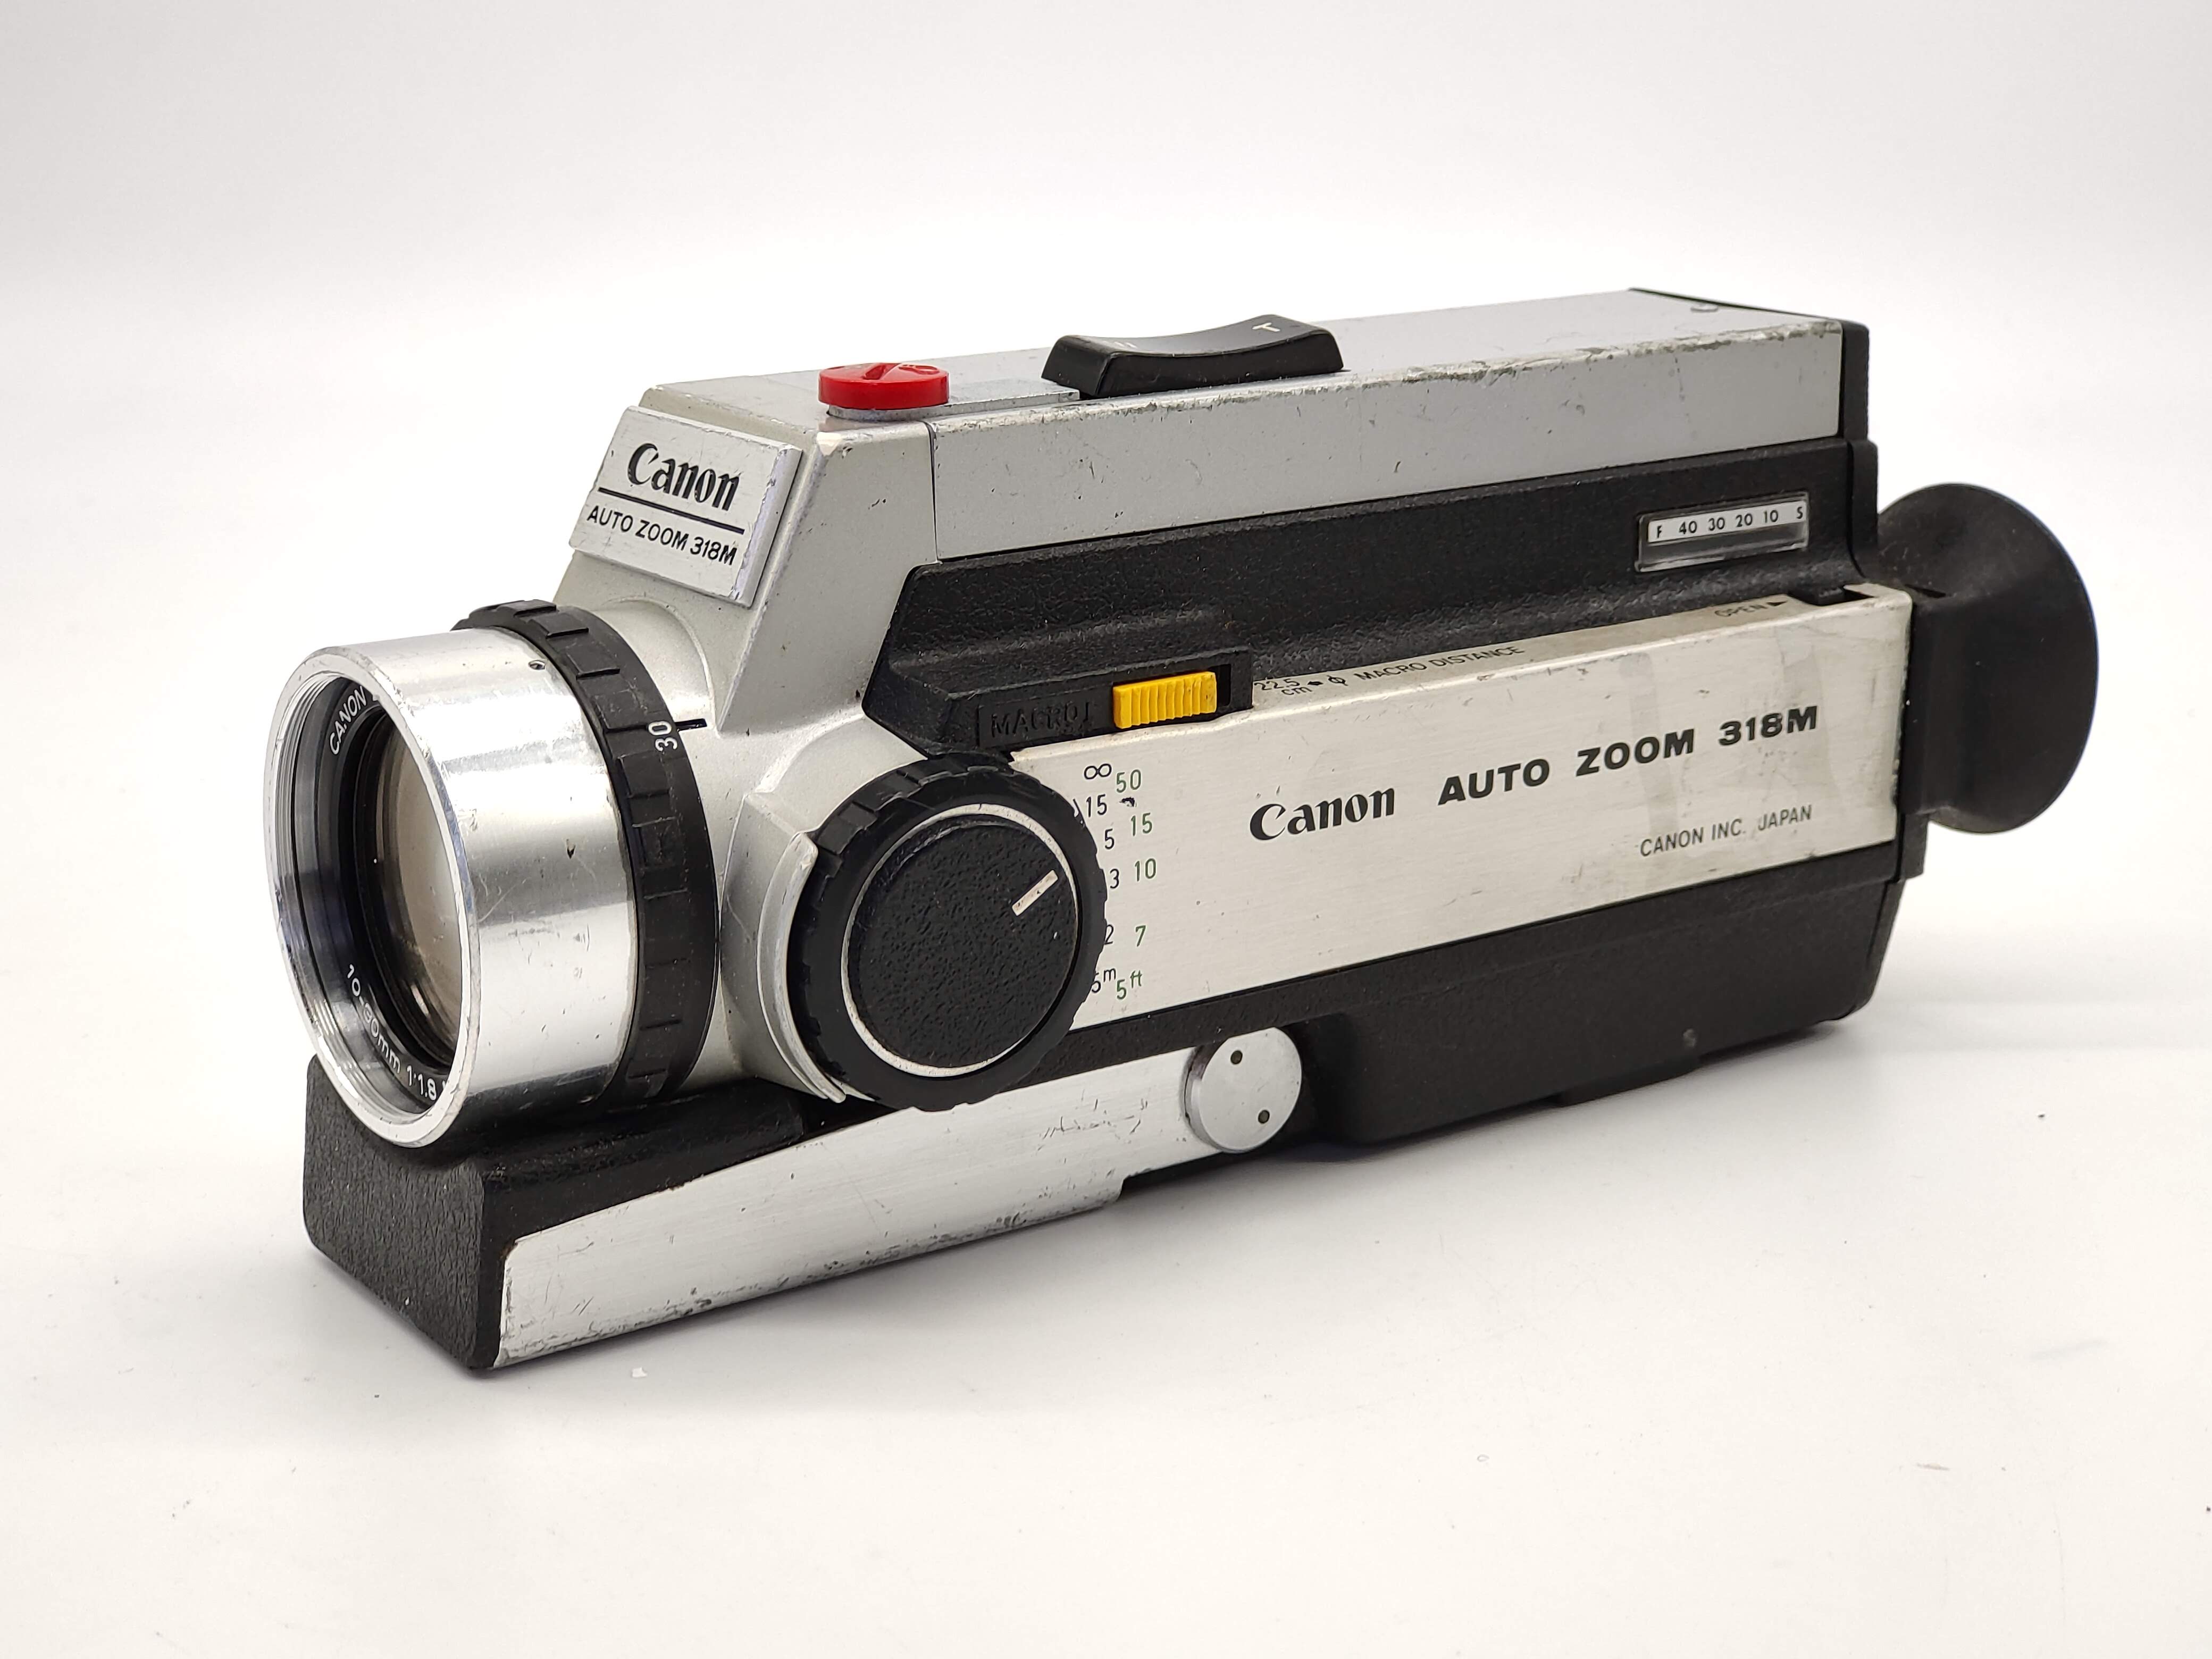 Canon Auto Zoom 318M Super-8 movie camera. – Classic Cameras AU